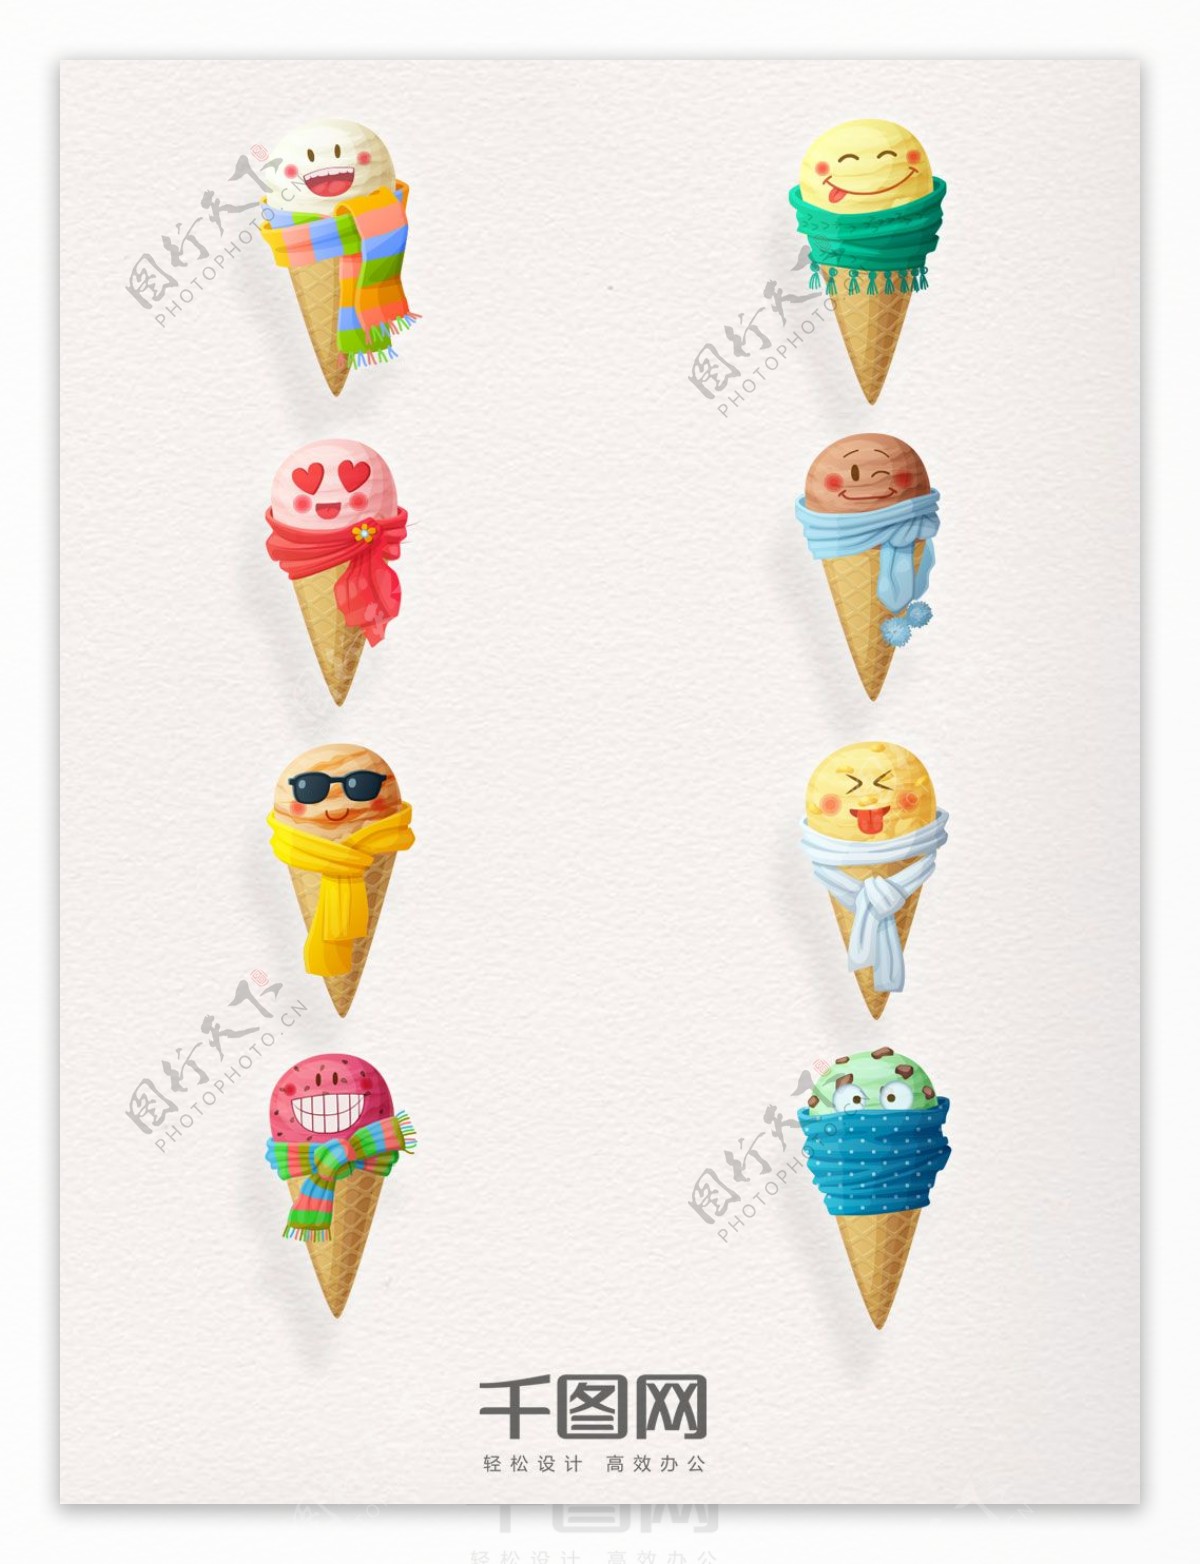 8款可爱卡通冰淇淋